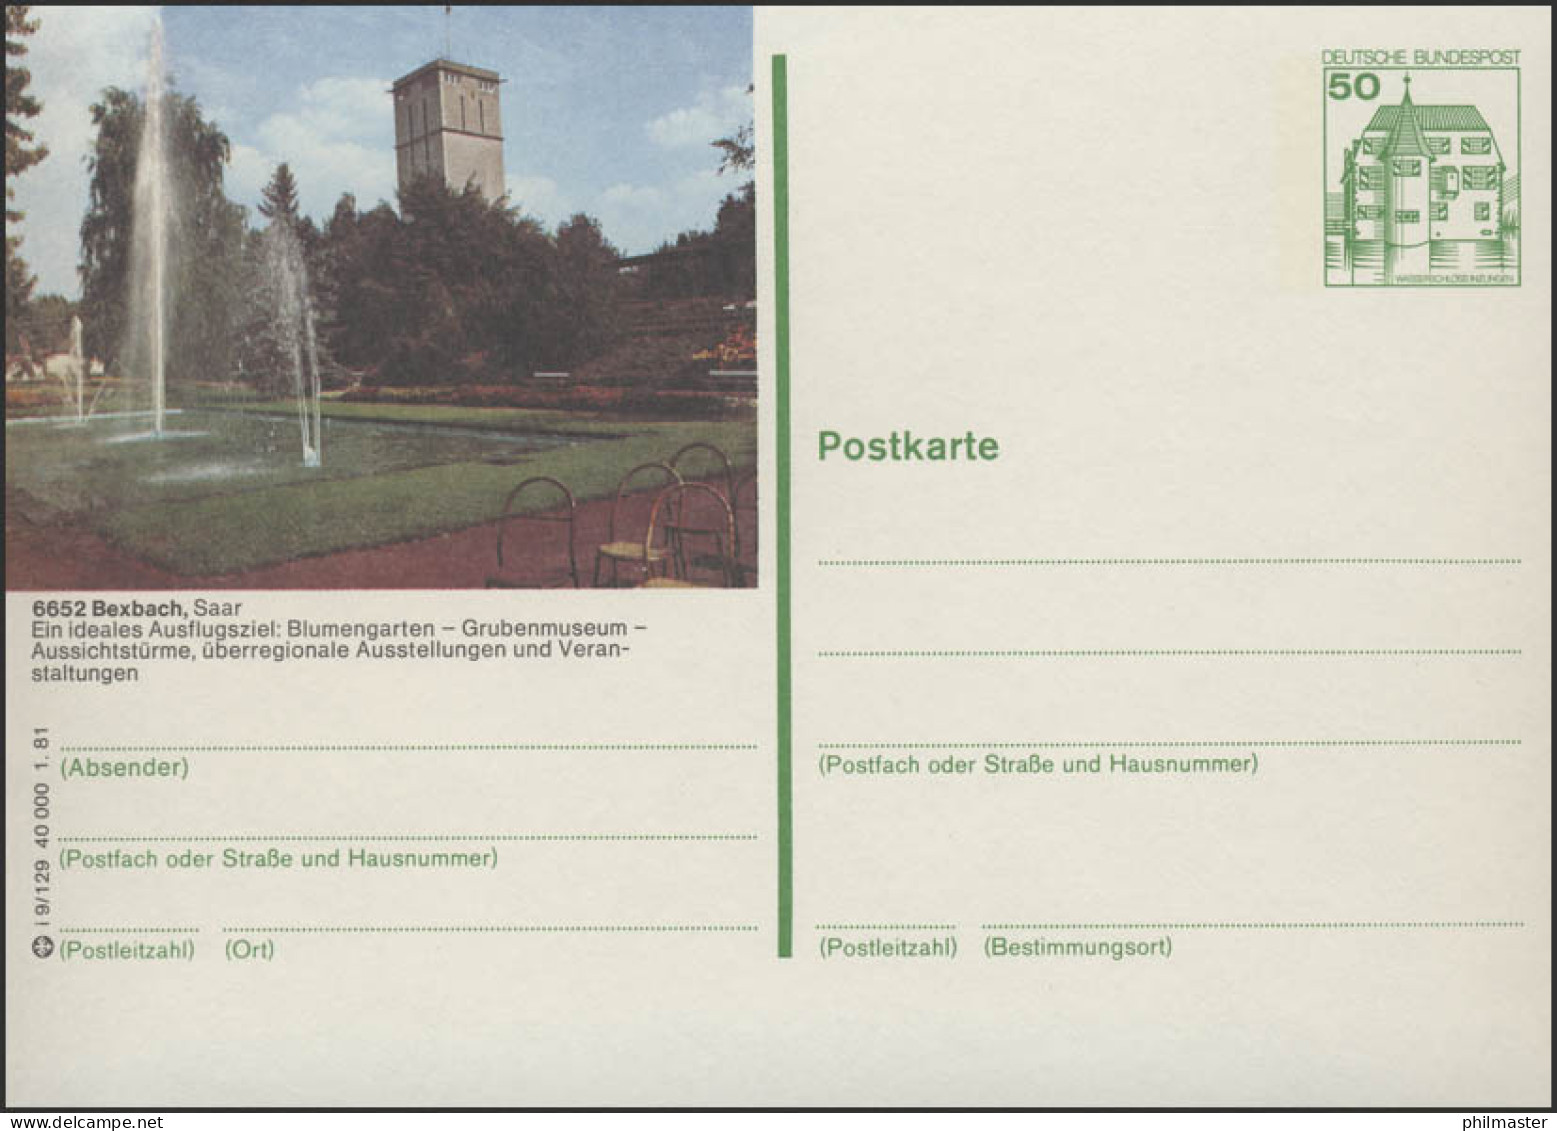 P134-i9/129 - 6652 Bexbach - Blumengarten Grubenmuseum ** - Bildpostkarten - Ungebraucht